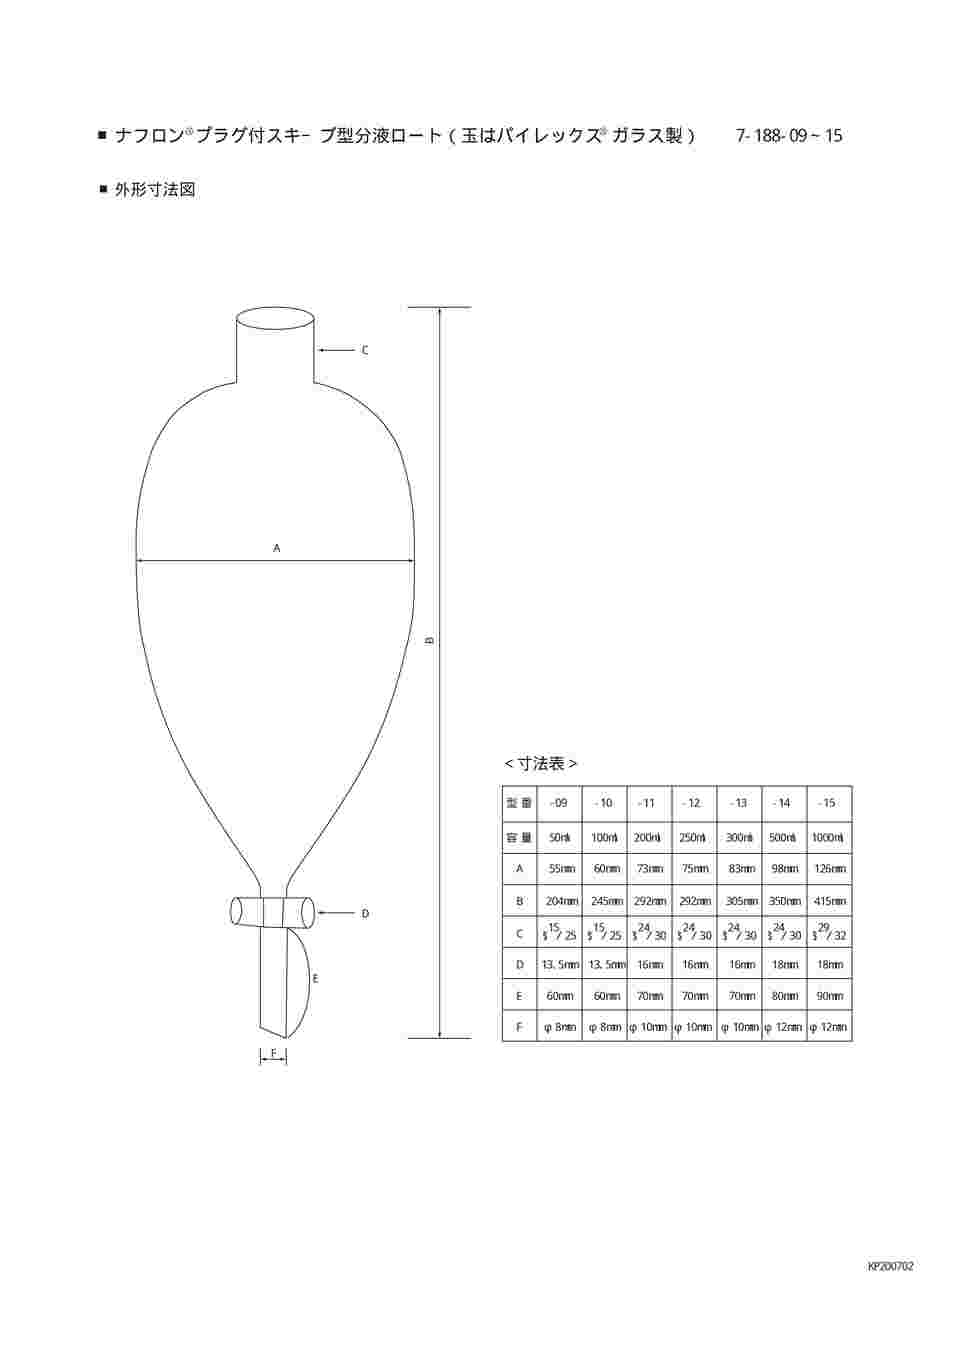 7-188-11 スキーブ型分液ロート テフロン（R）プラグ付 200mL 【AXEL